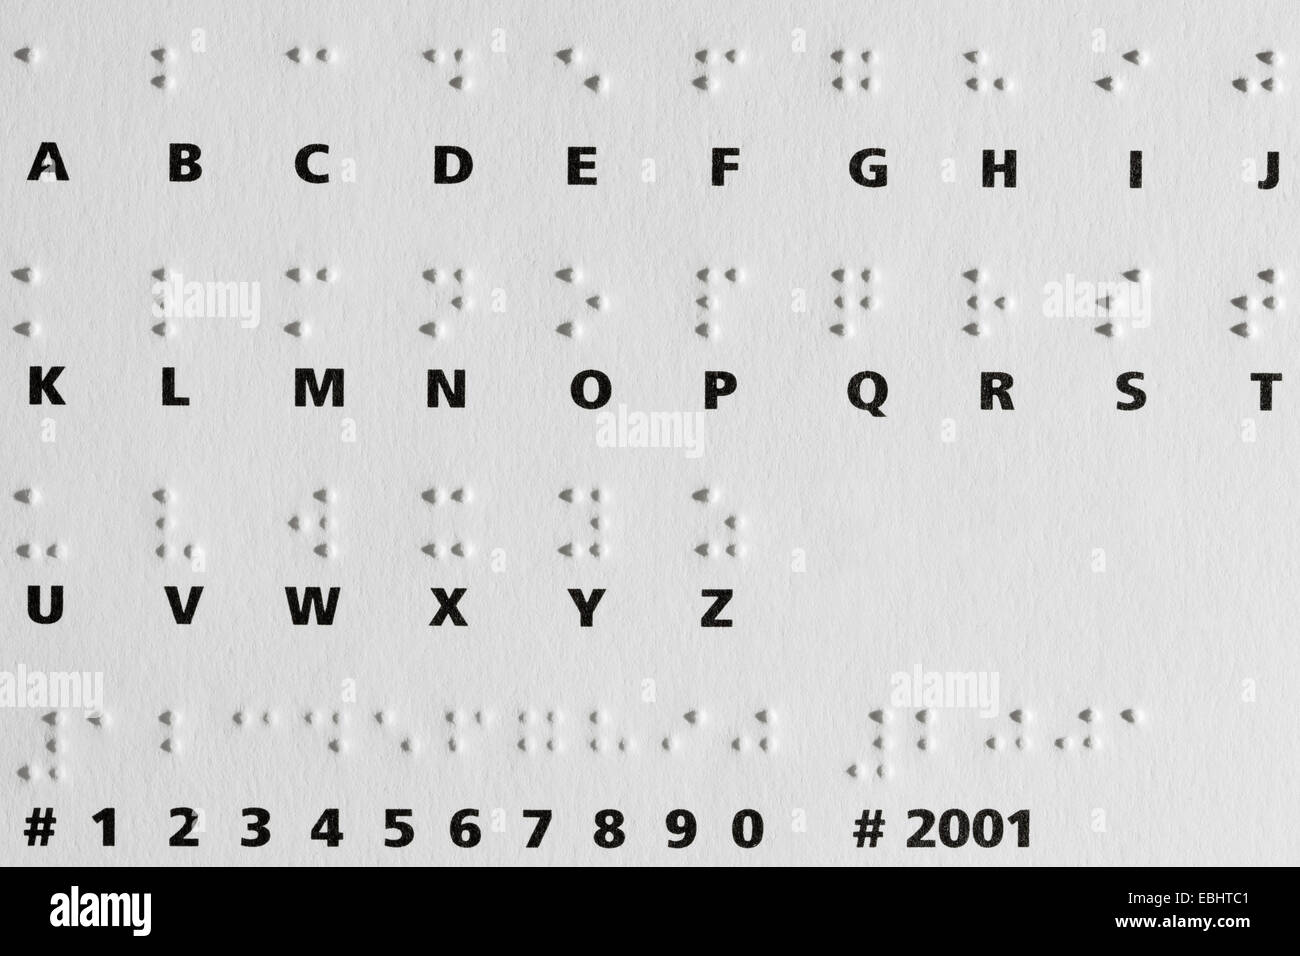 Ombre di puntini in rilievo su una carta con l'alfabeto Braille. Il sistema è ampiamente utilizzato dai non vedenti per leggere e scrivere. Foto Stock